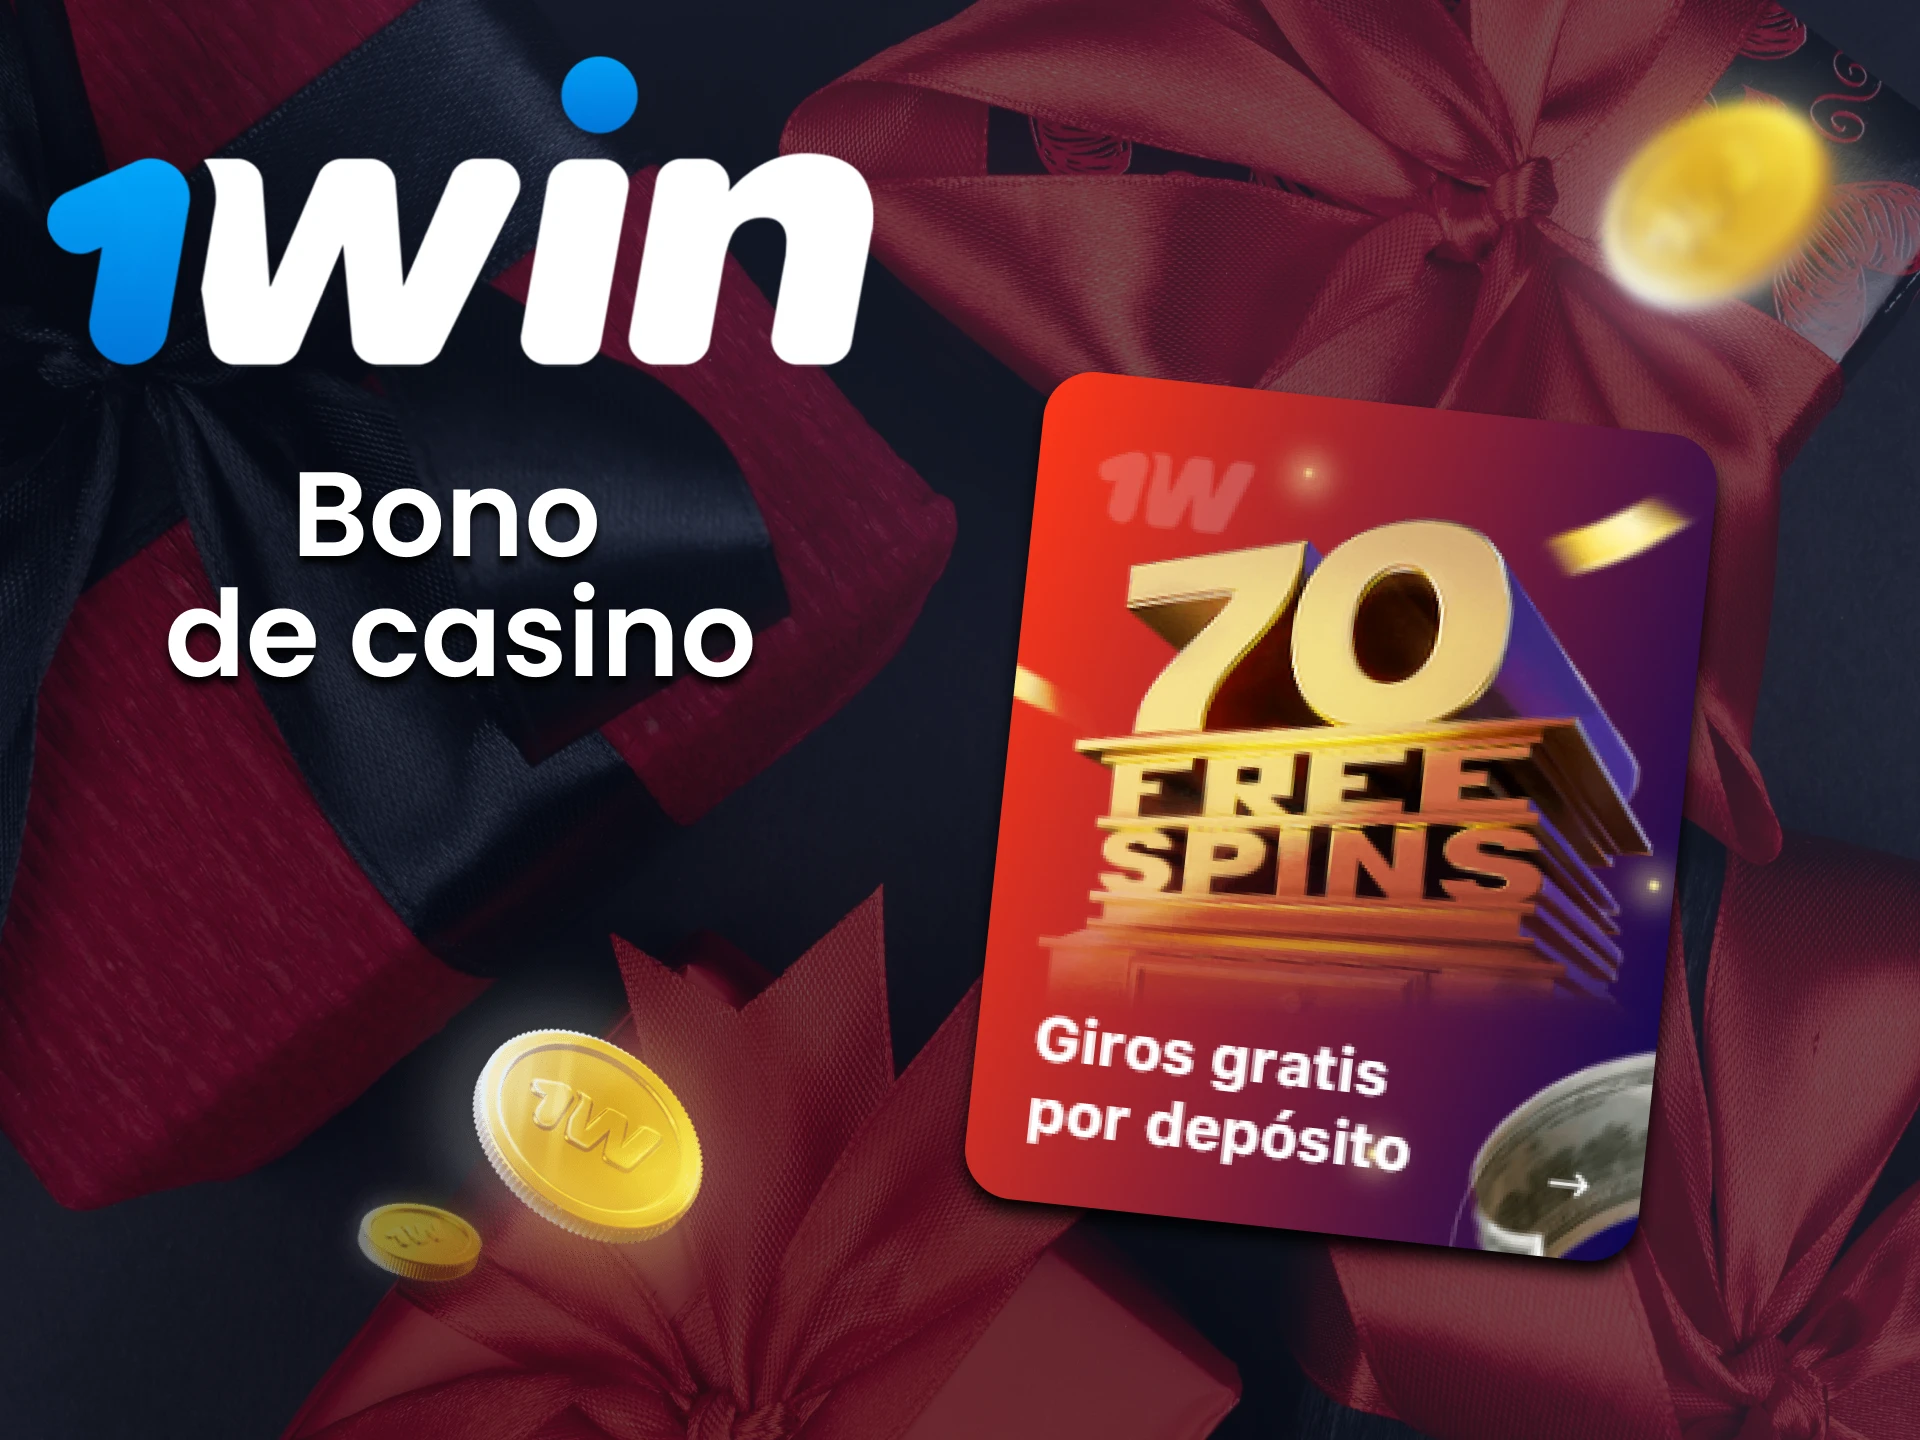 Consigue tu bono de casino en la 1win app.